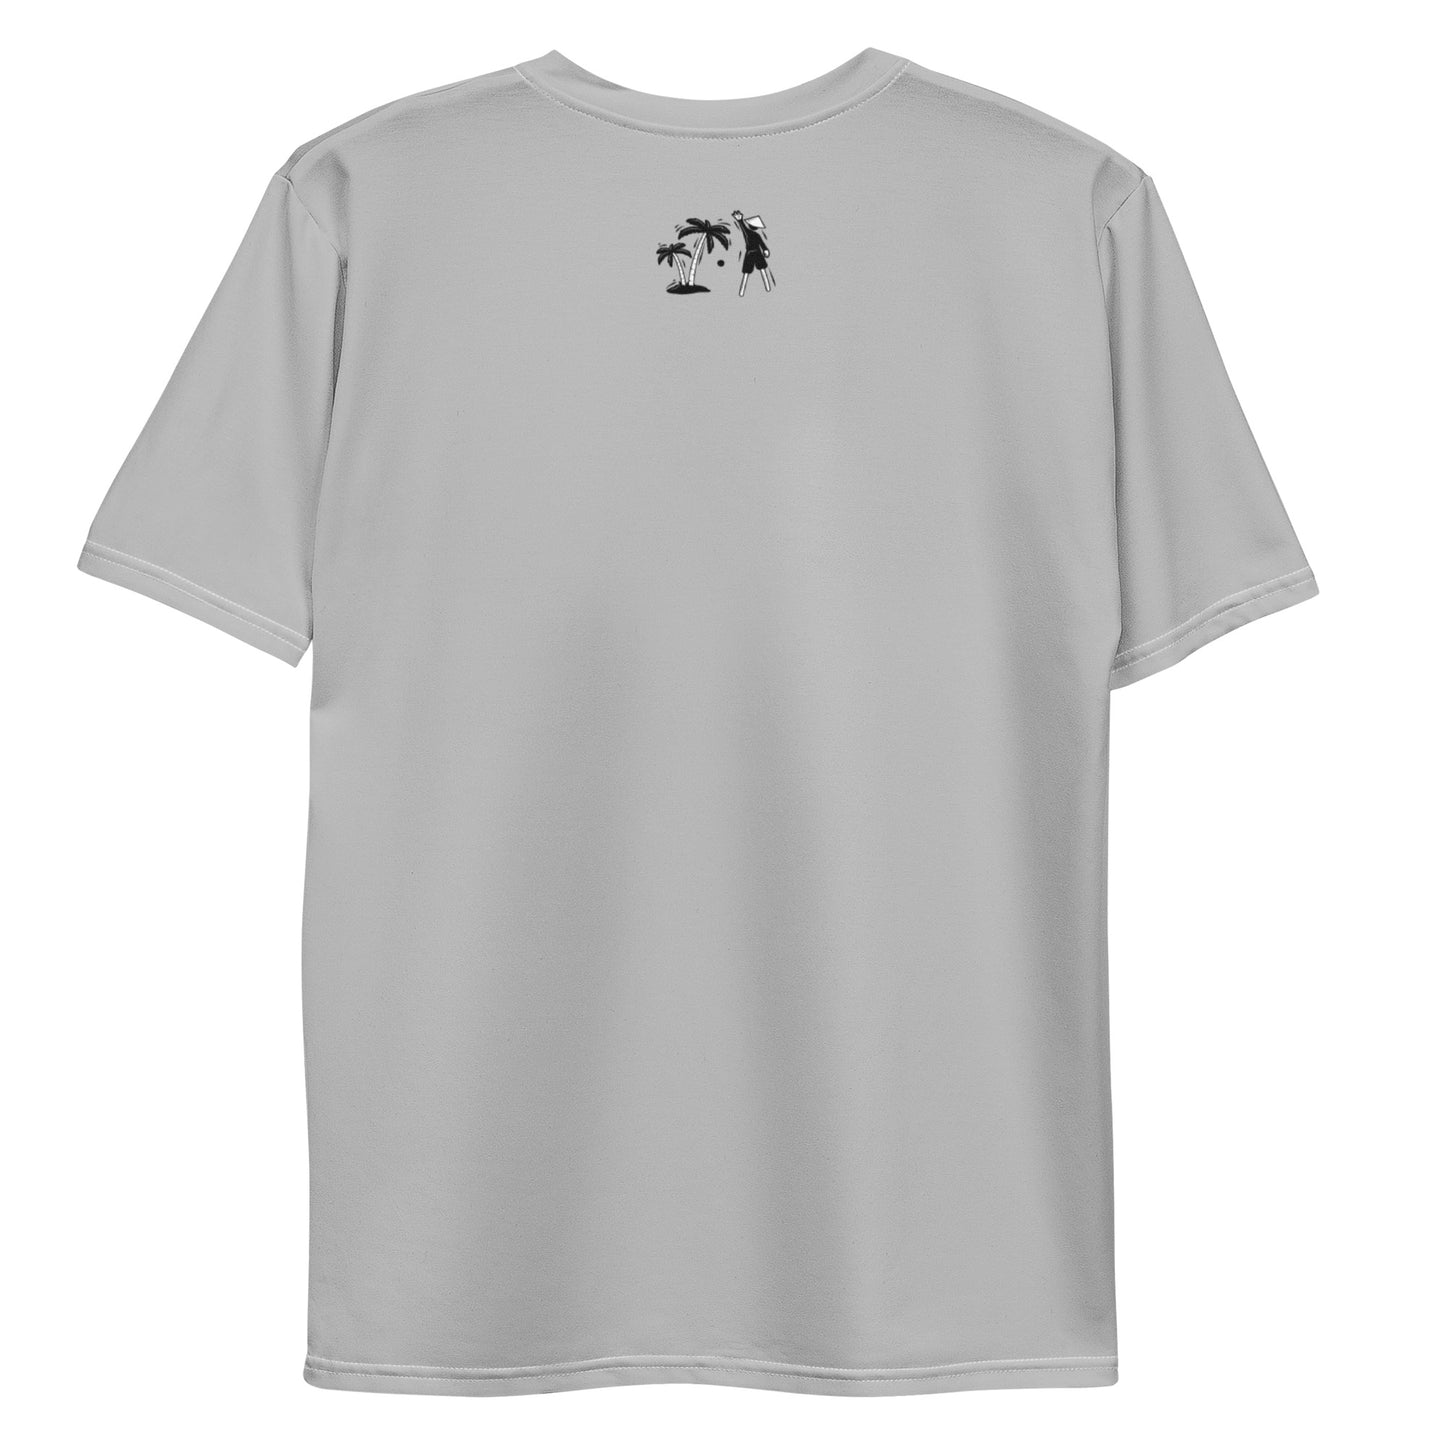 Gray V.Localized (Black/White) Men’s Dry-Fit T-Shirt